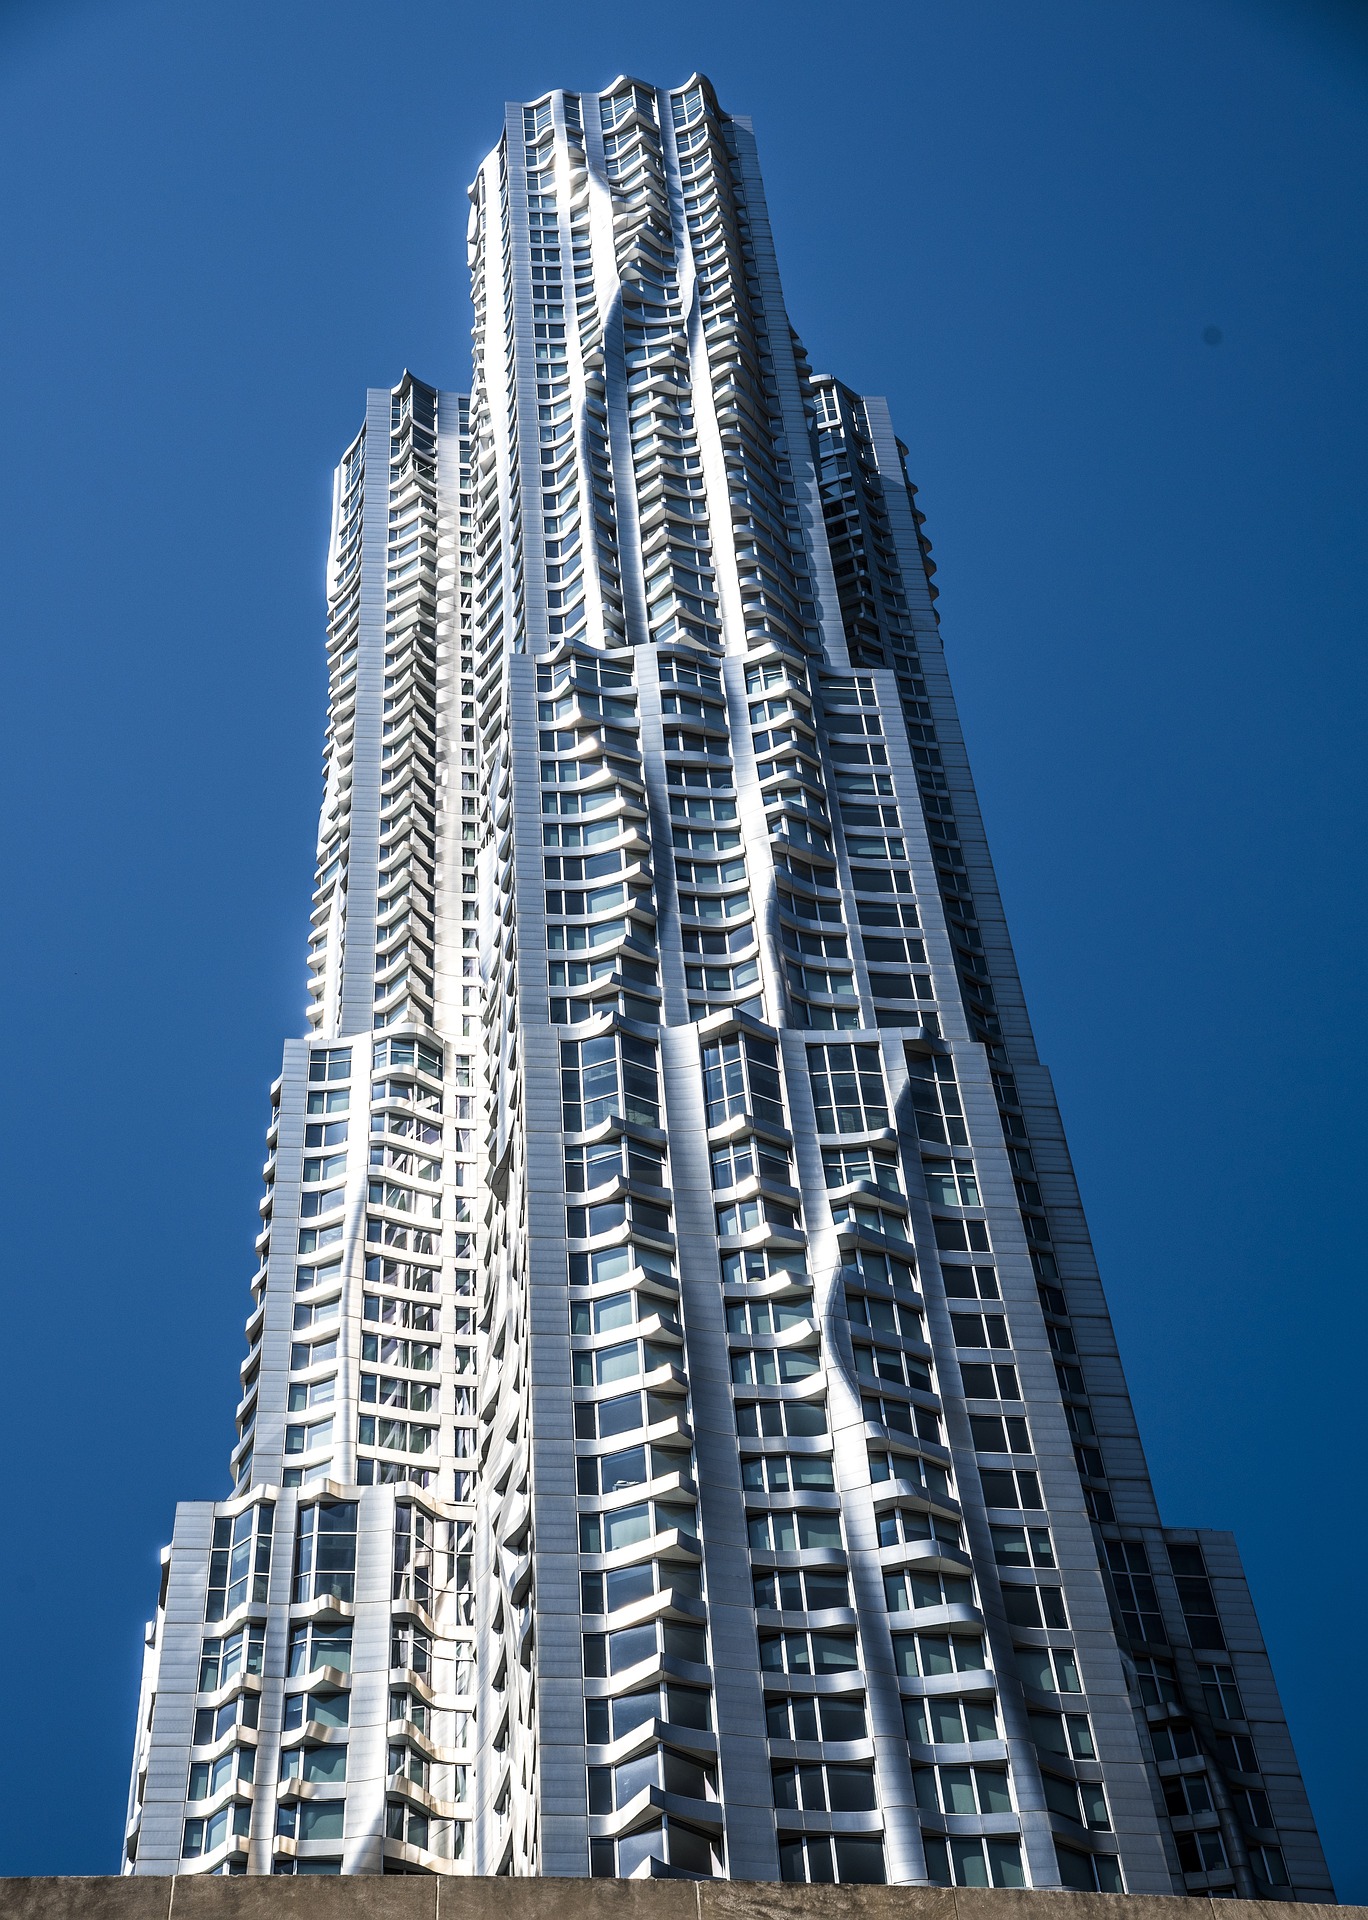 Wolkenkratzer mal anders: 8 Spruce Street (New York), entworfen von Frank Gehry im Stil des Dekonstruktivismus.